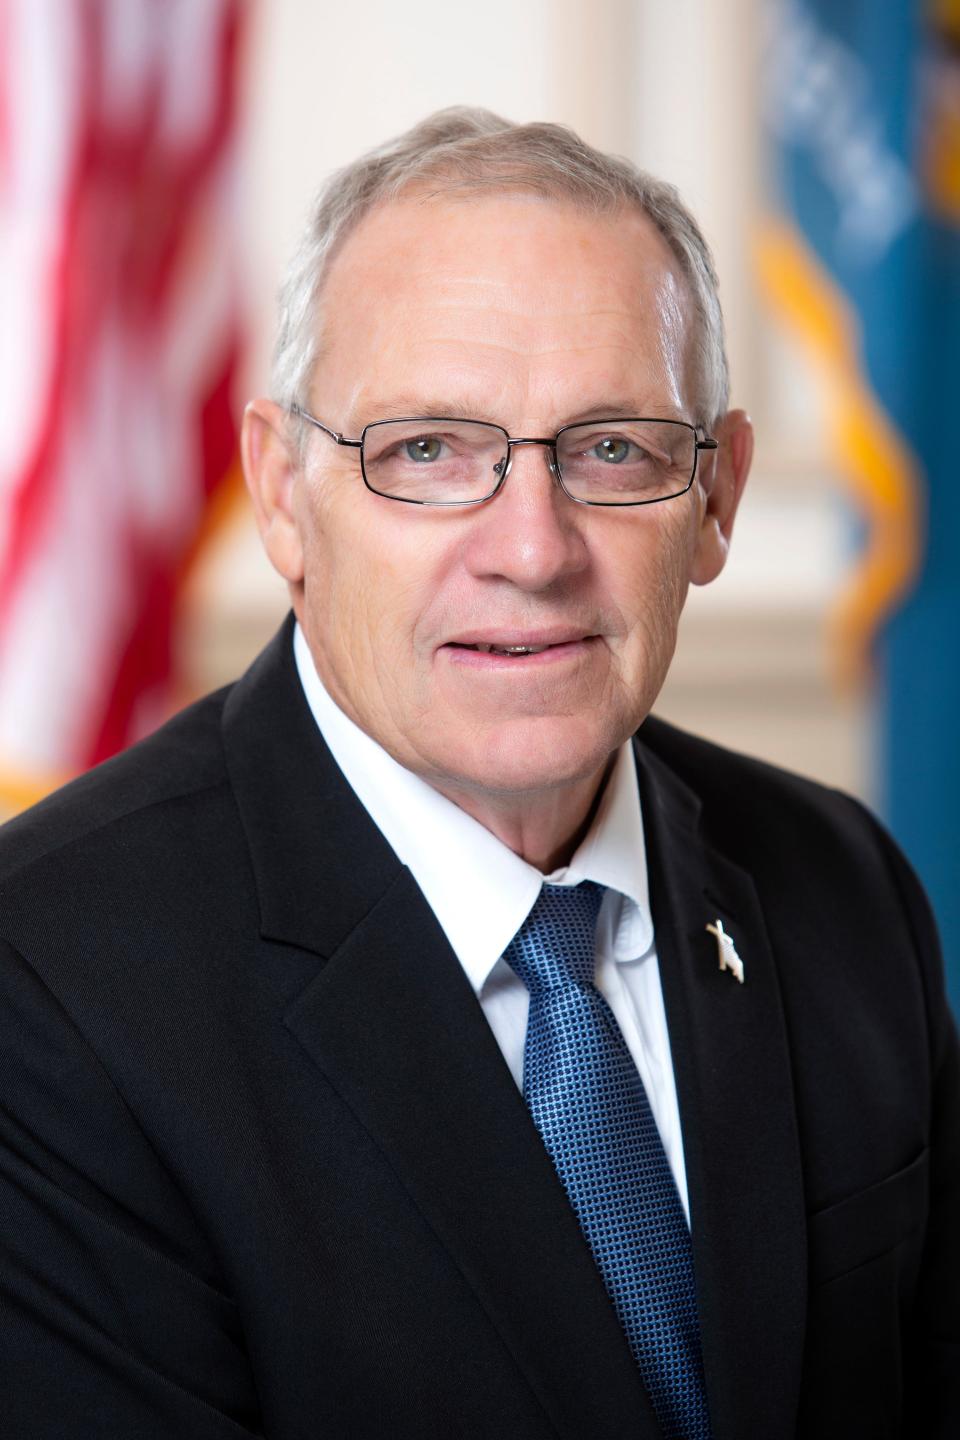 State Rep. Rich Collins, R-Millsboro, represents the 41st Representative District.